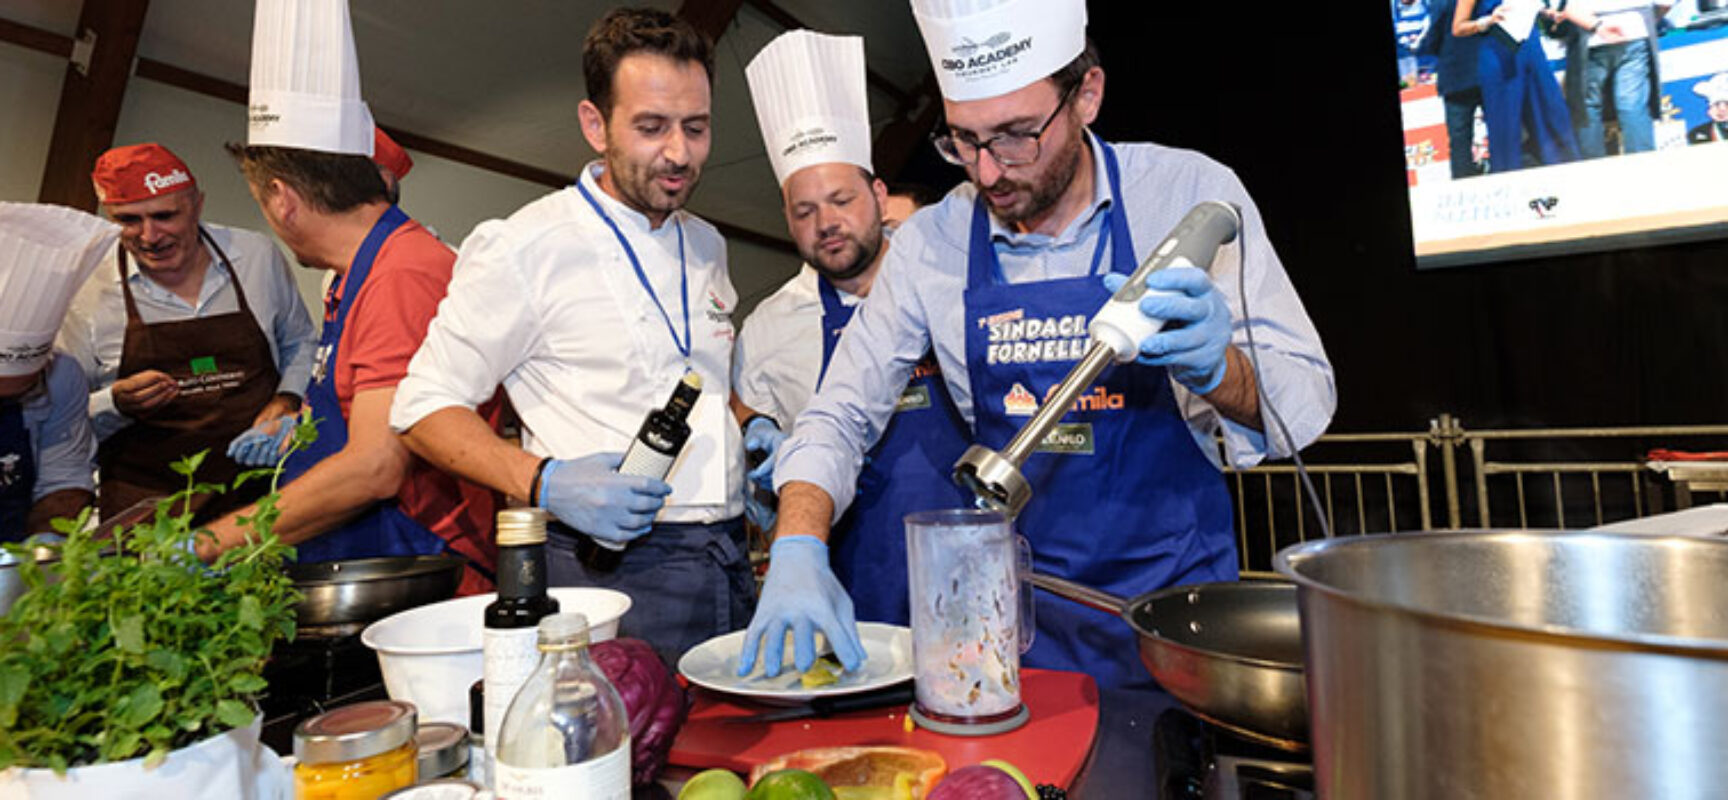 Torna “Sindaci ai fornelli!”, a Bisceglie l’evento con la sfida in cucina più originale d’Italia